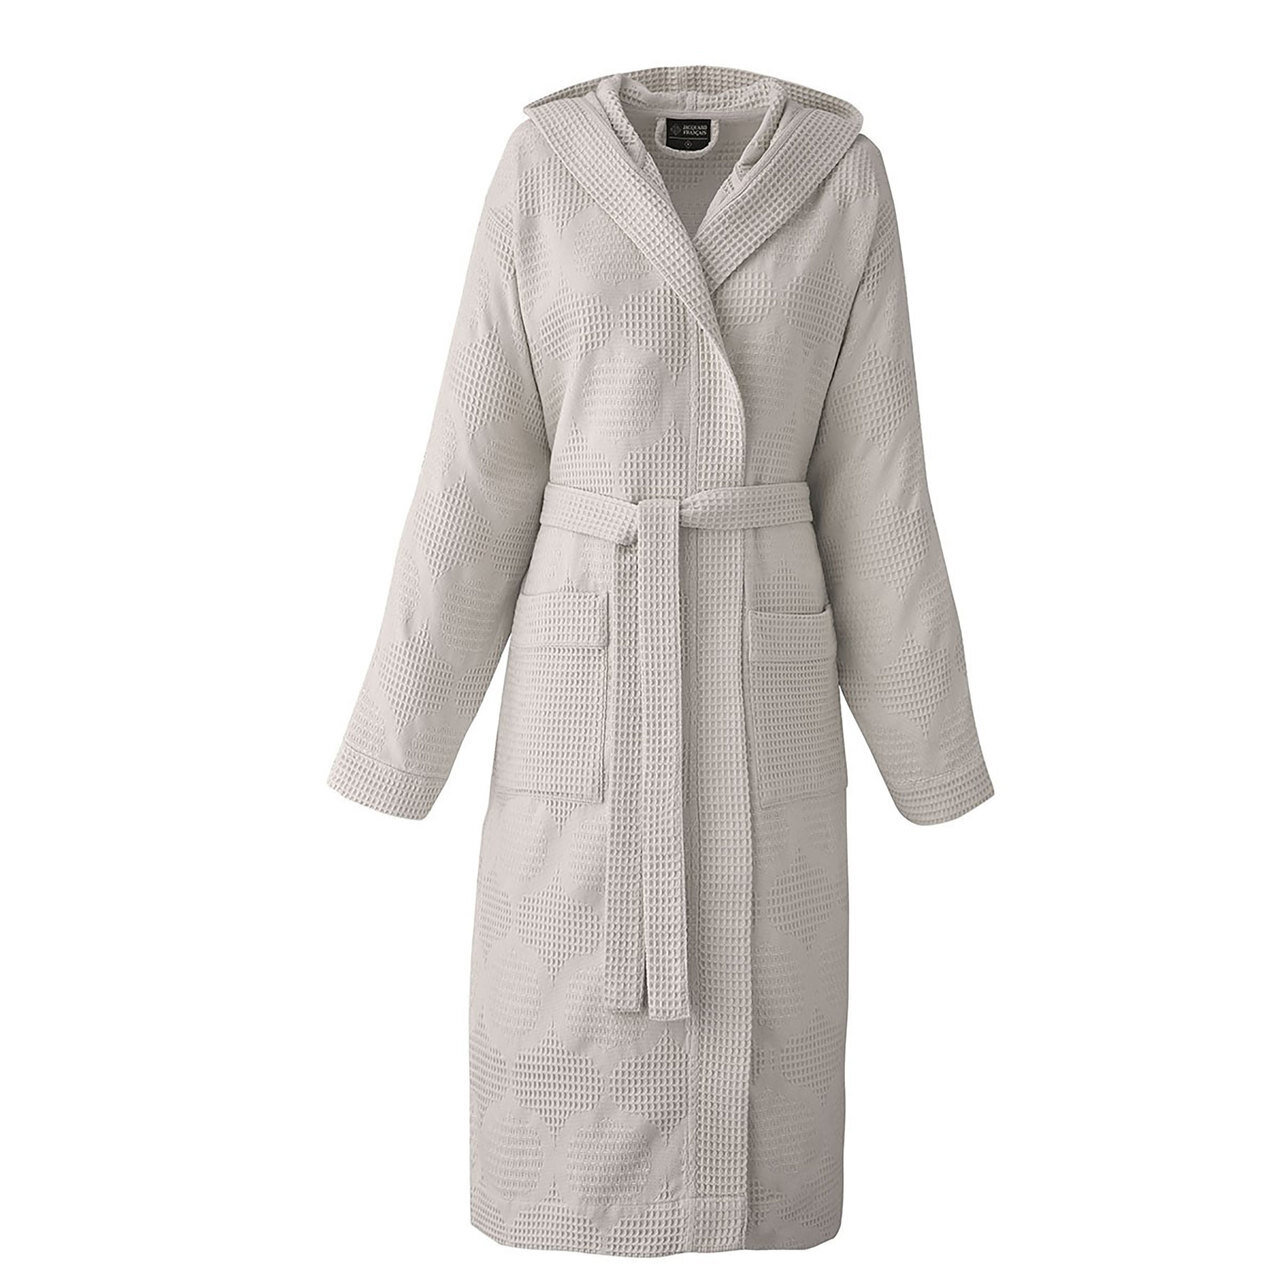 Le Jacquard Hera Brown Robe Size M/L